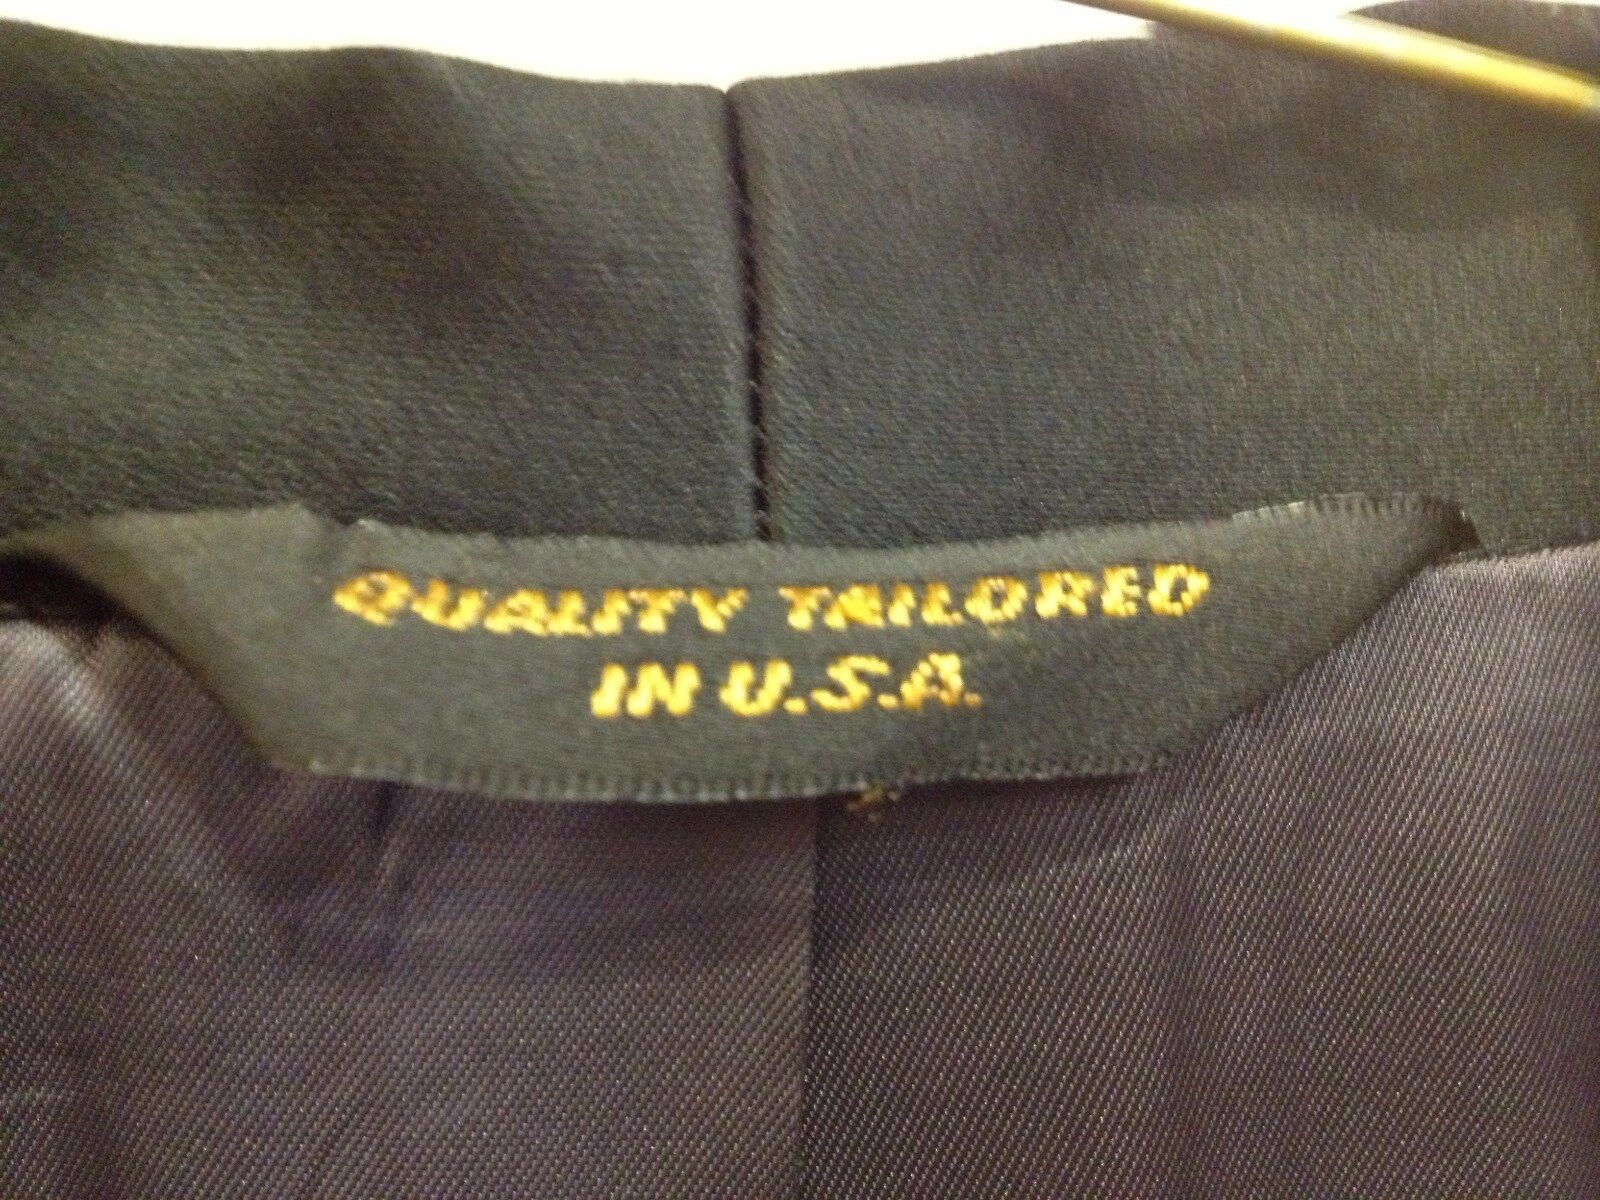 Black One Button Shawl Lapel Tuxedo Jacket with Pant Option - Multiple sizes WYPRZEDAŻ, 2022